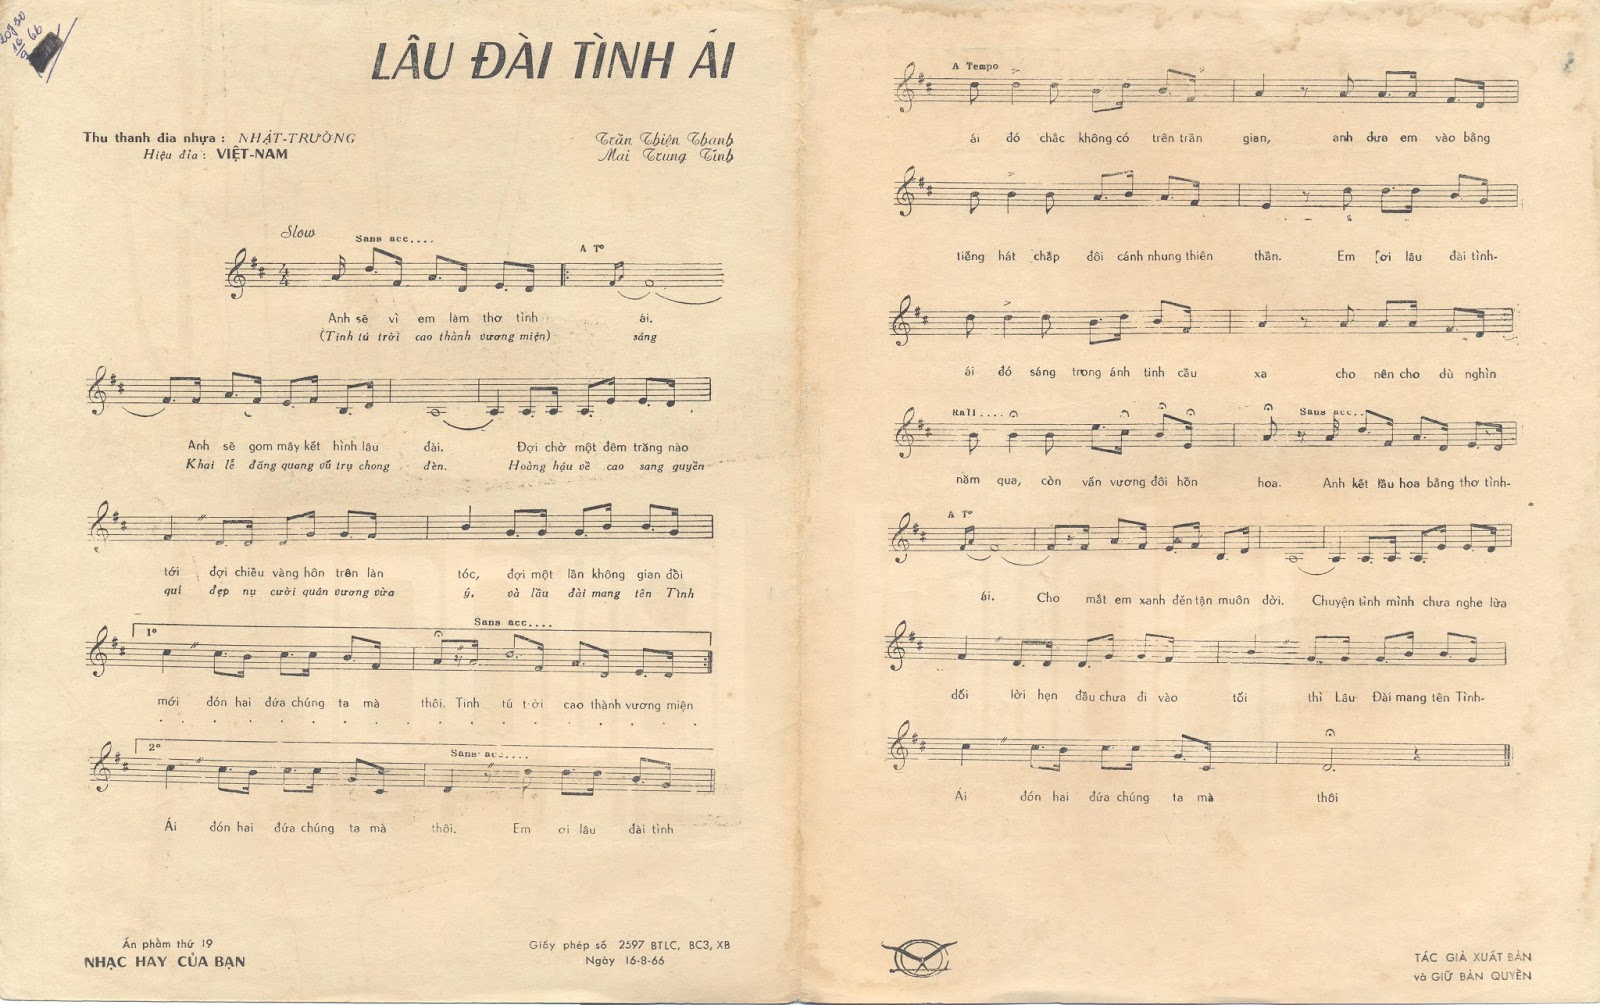 laudaitinhai2 - [Sheet] Lâu đài tình ái - nhạc: Trần Thiện Thanh, thơ: Mai Trung Tĩnh